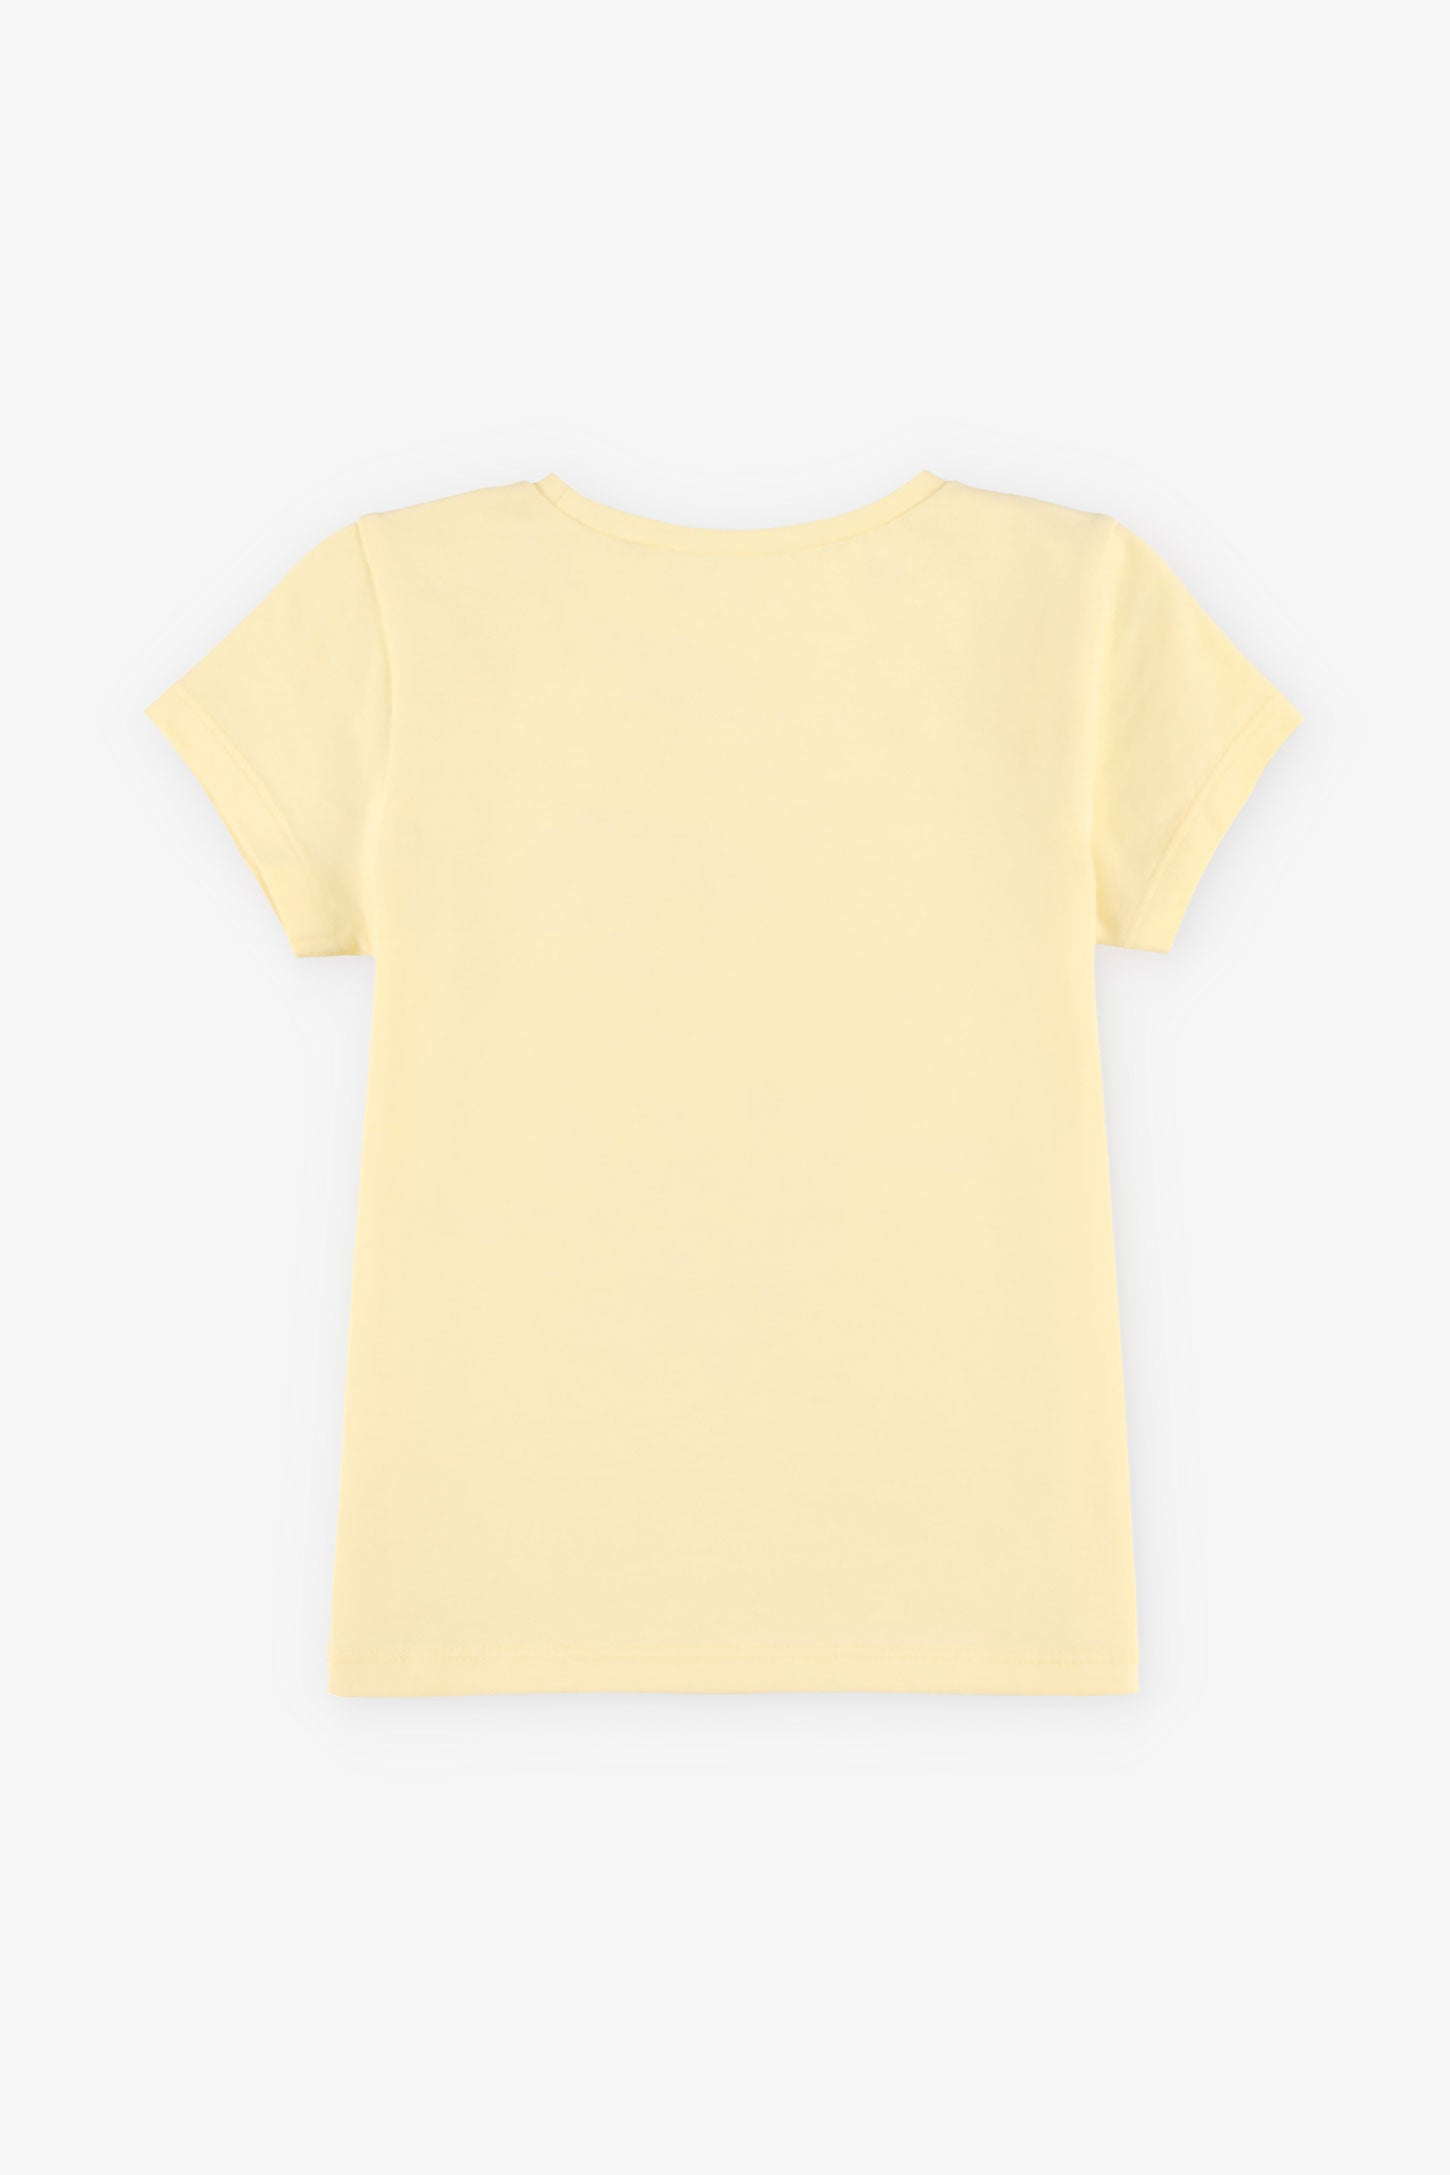 T-shirt rond imprimé coton, 2T-3T, 2/15$ - Bébé fille && JAUNE